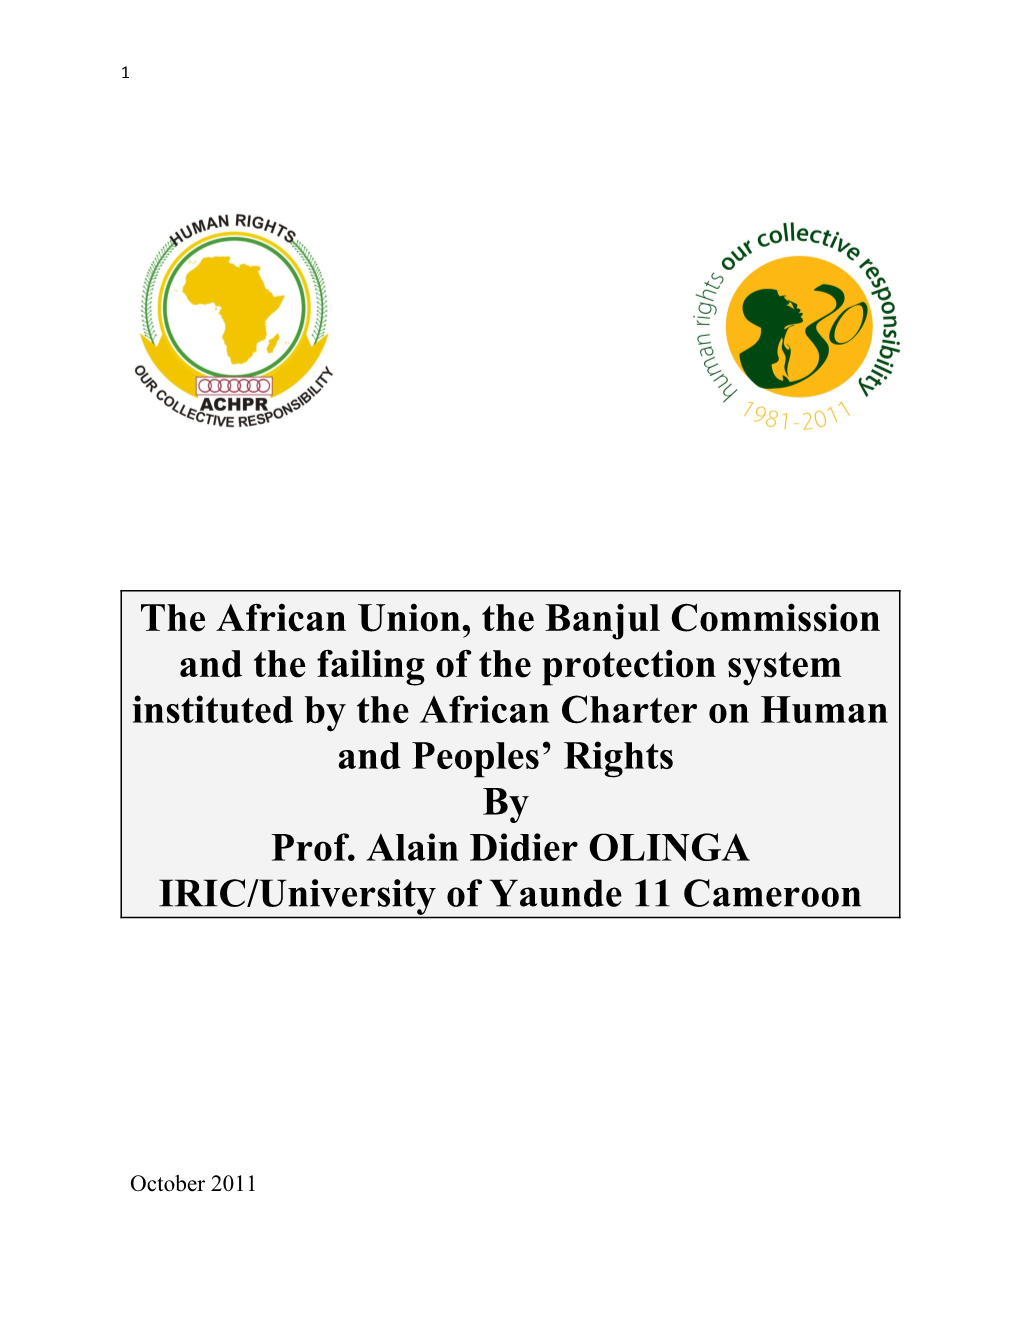 L Union Africaine, La Commission De Banjul Et Les Lacunes Du Système De Protection Institué